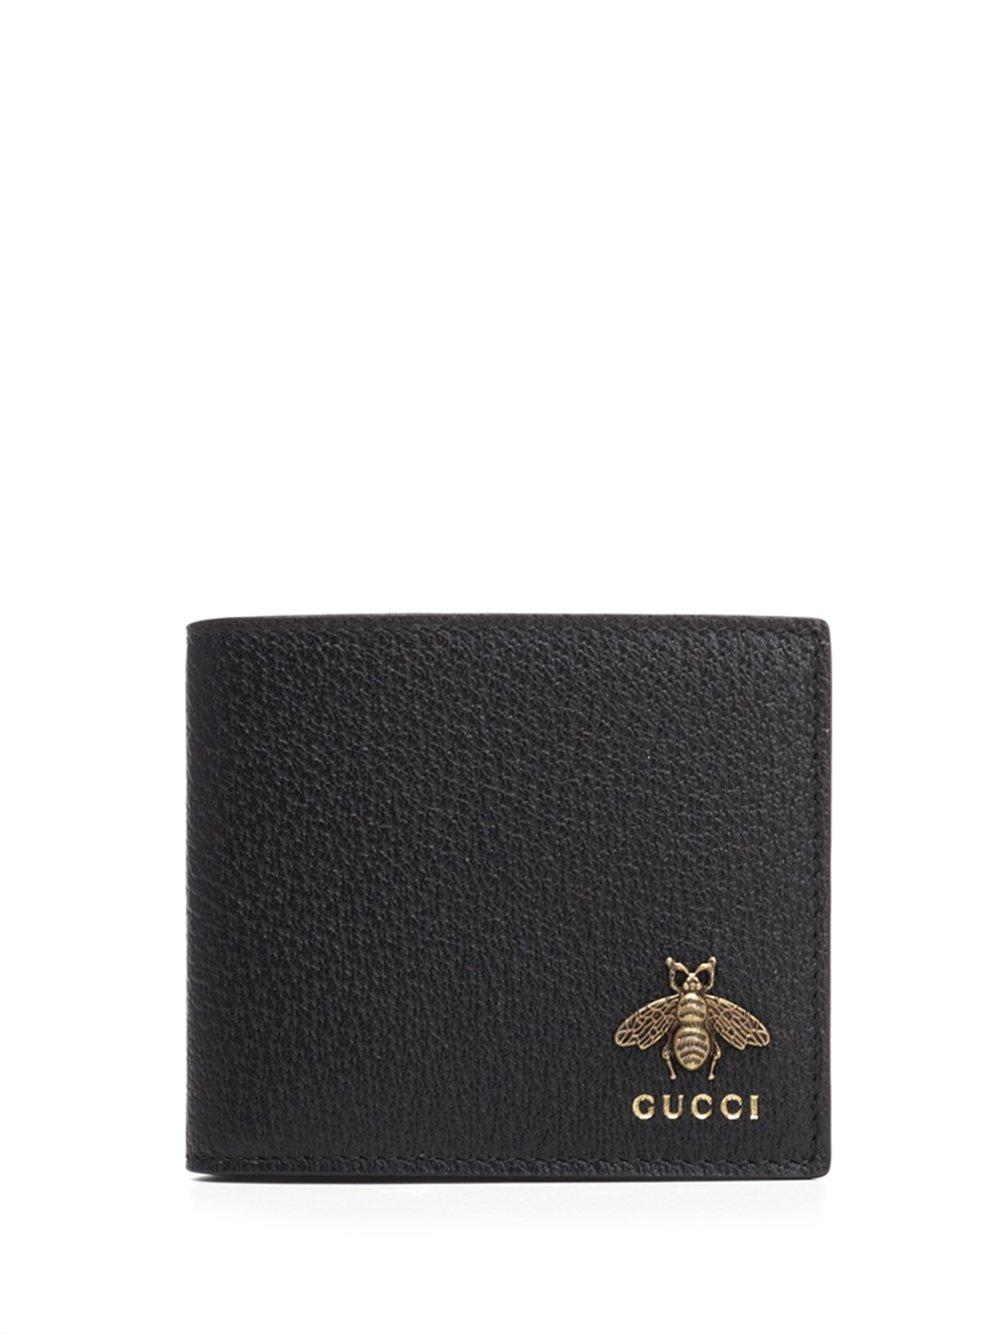 Gucci Bee Logo Wallet in Black for Men | Lyst